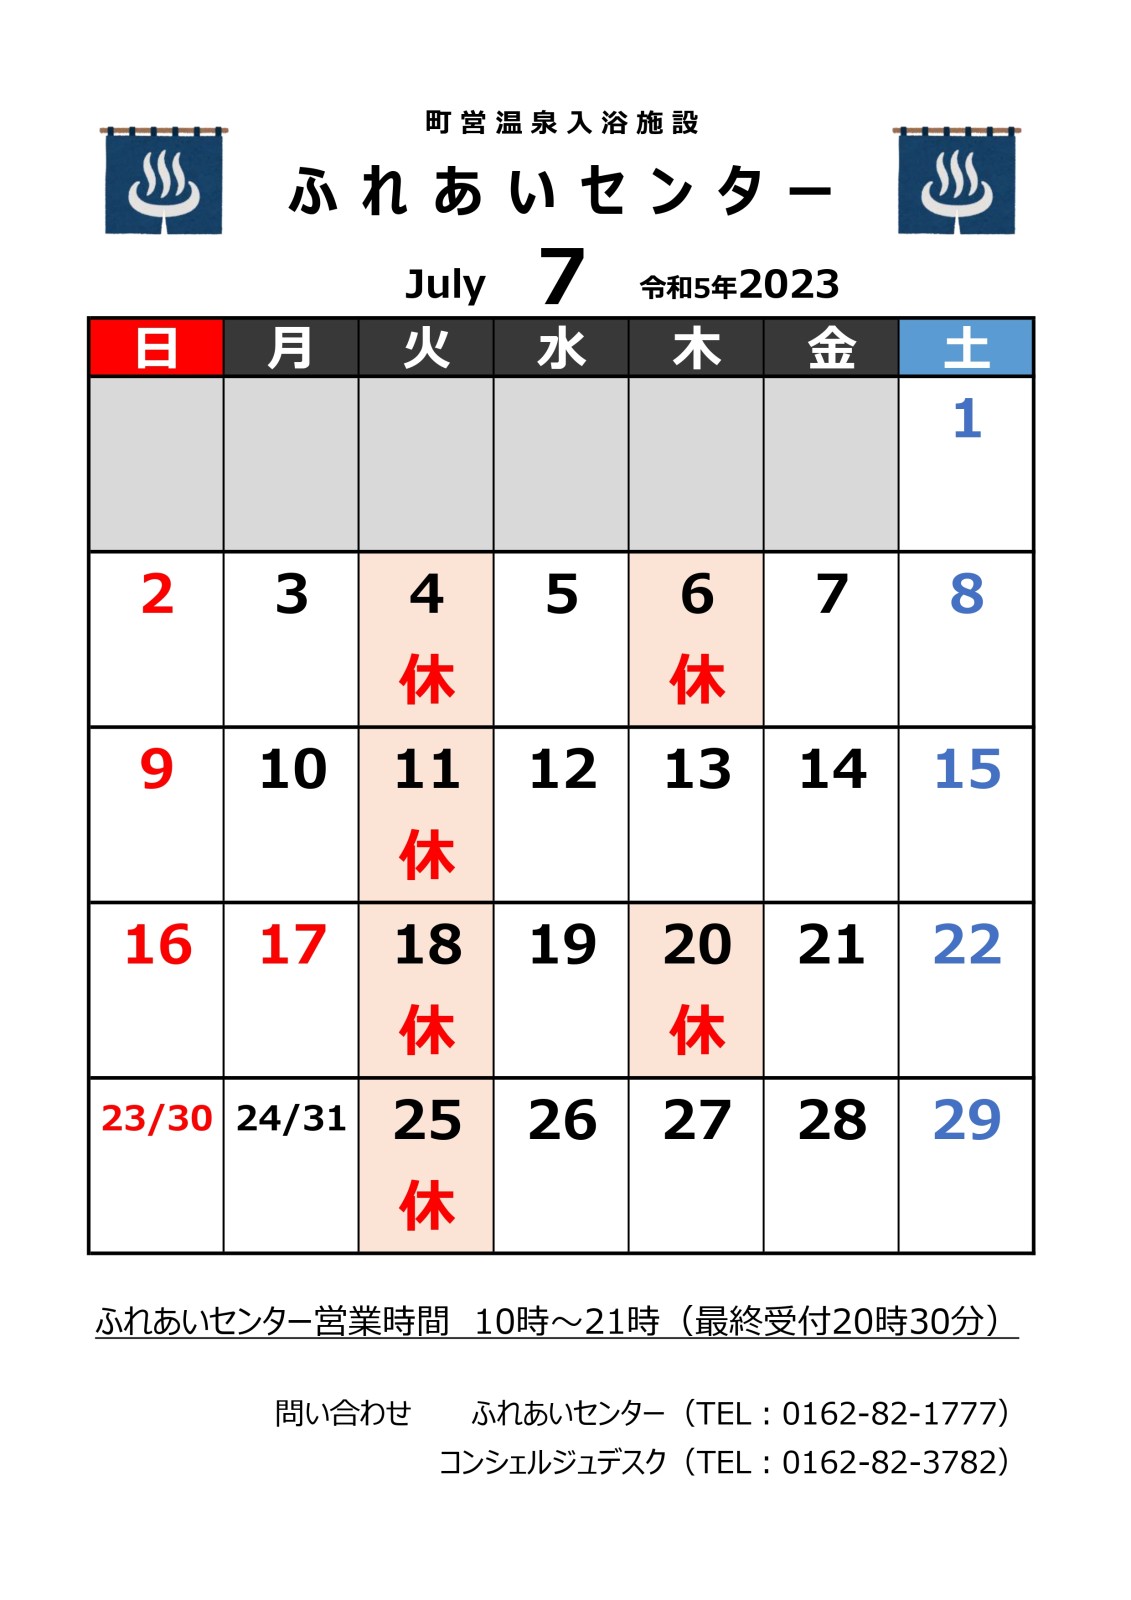 【ふれあいセンター】7月の営業について